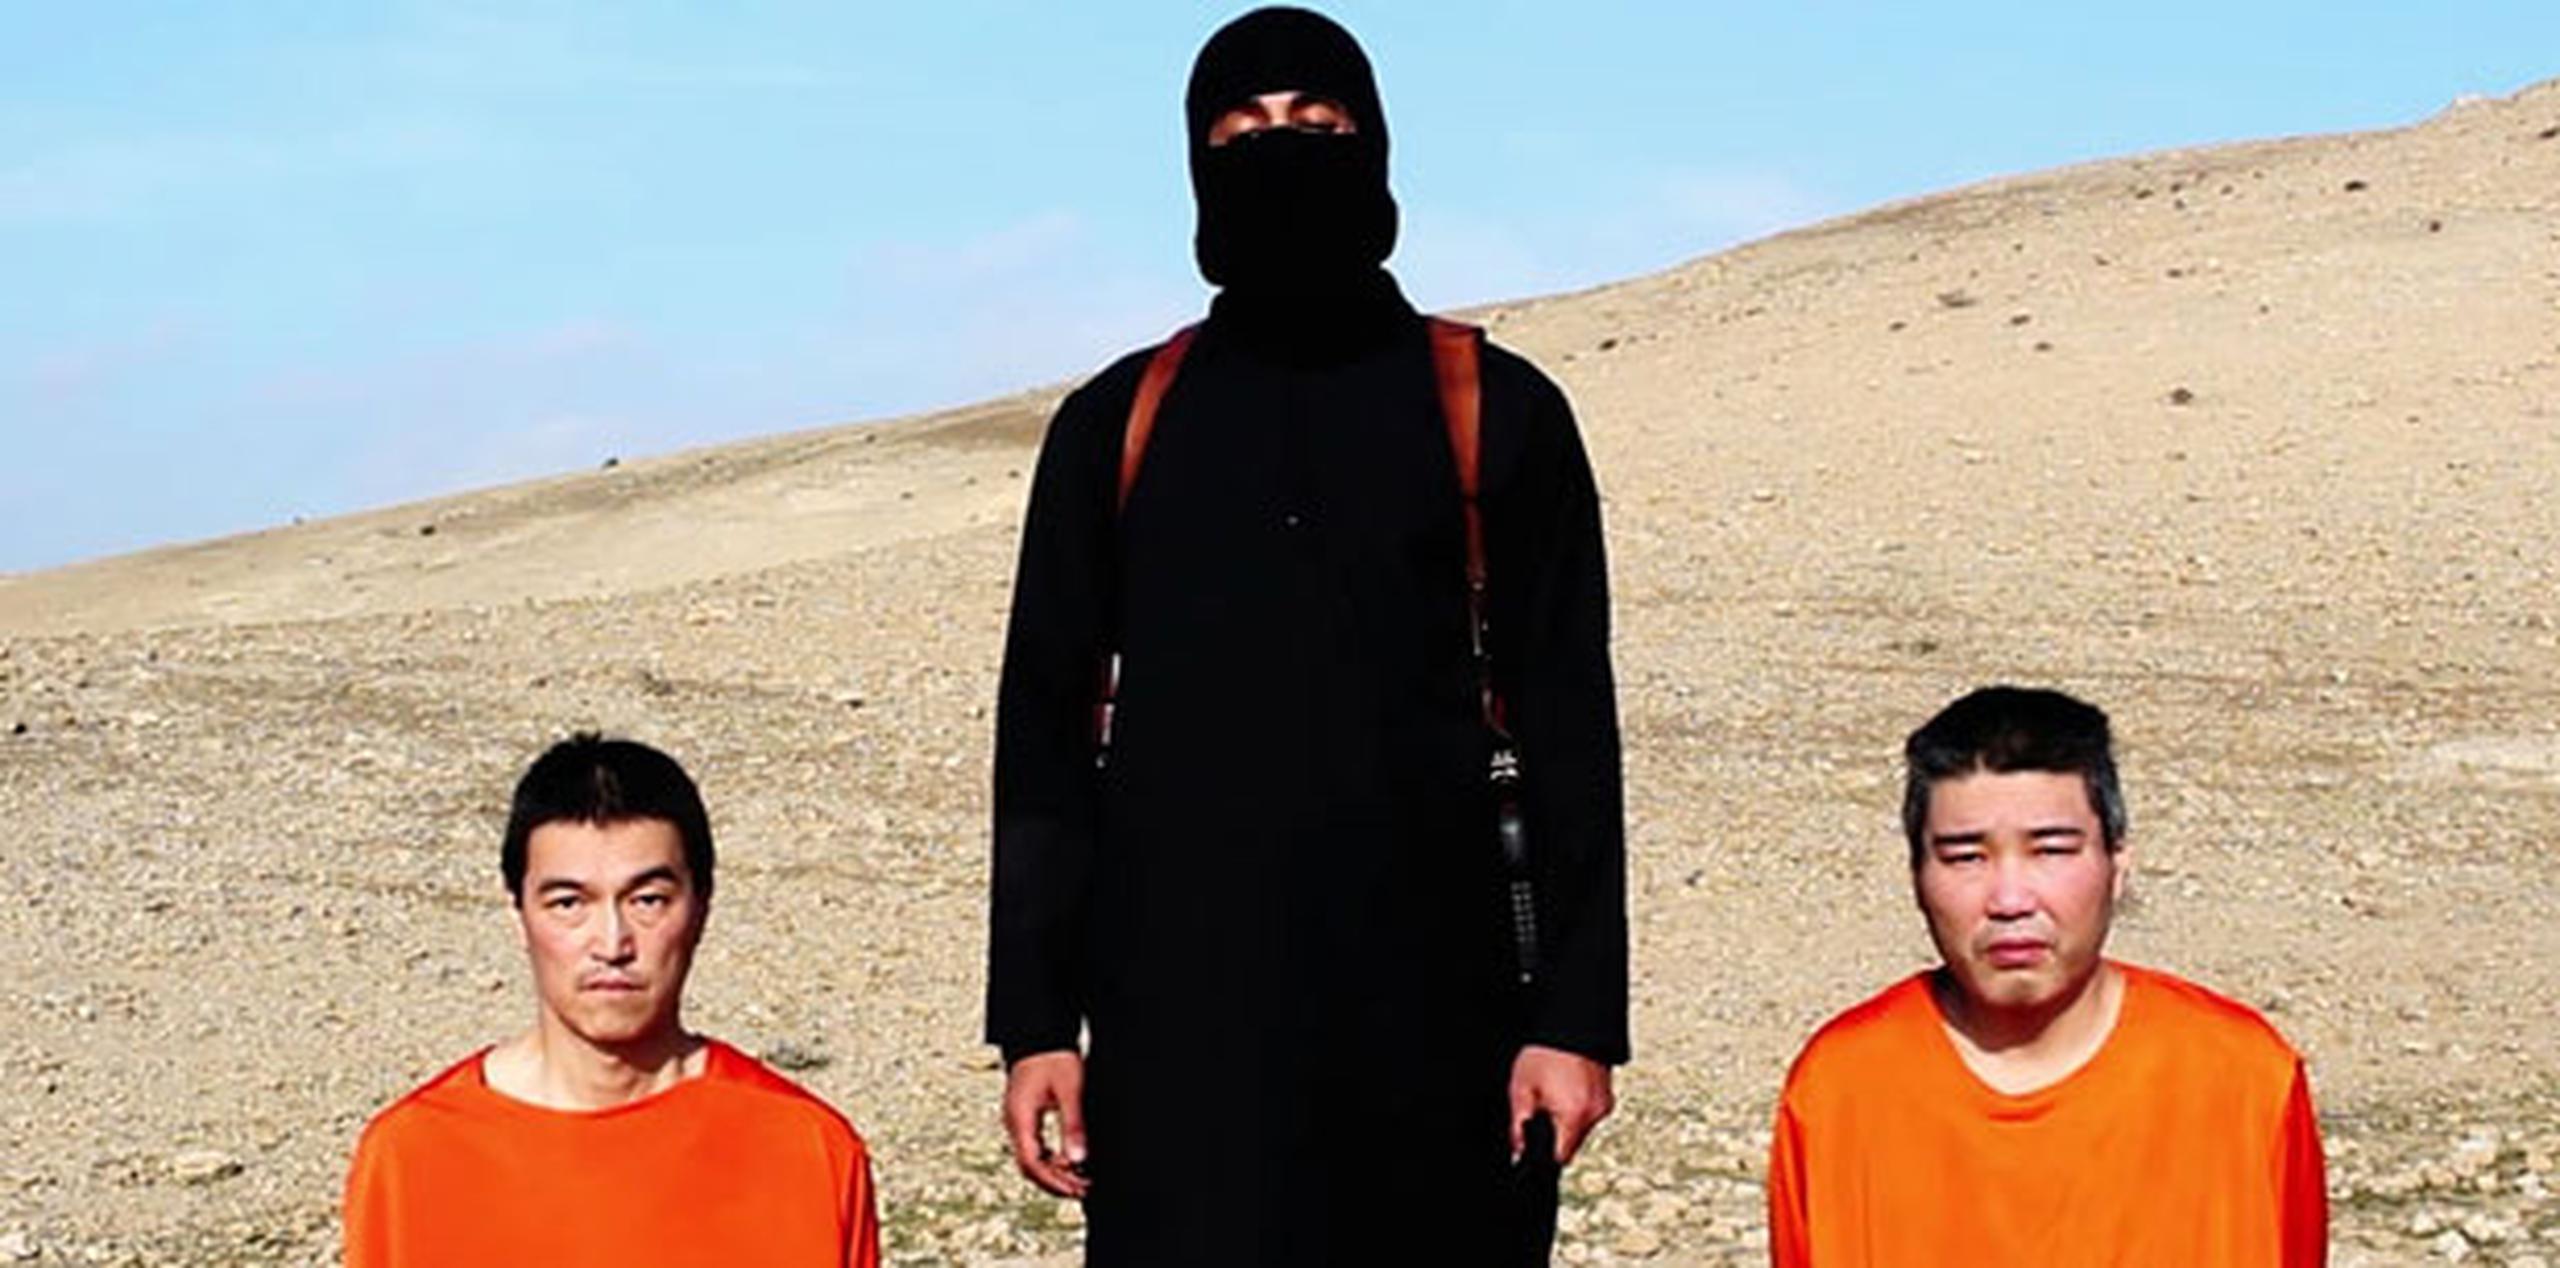 A la izquierda, el rehén japonés Kenji Goto. A la derecha,  Haruna Yukawa, quien presuntamente fue asesinado a manos del grupo extremista Estado Islámico. (AP)